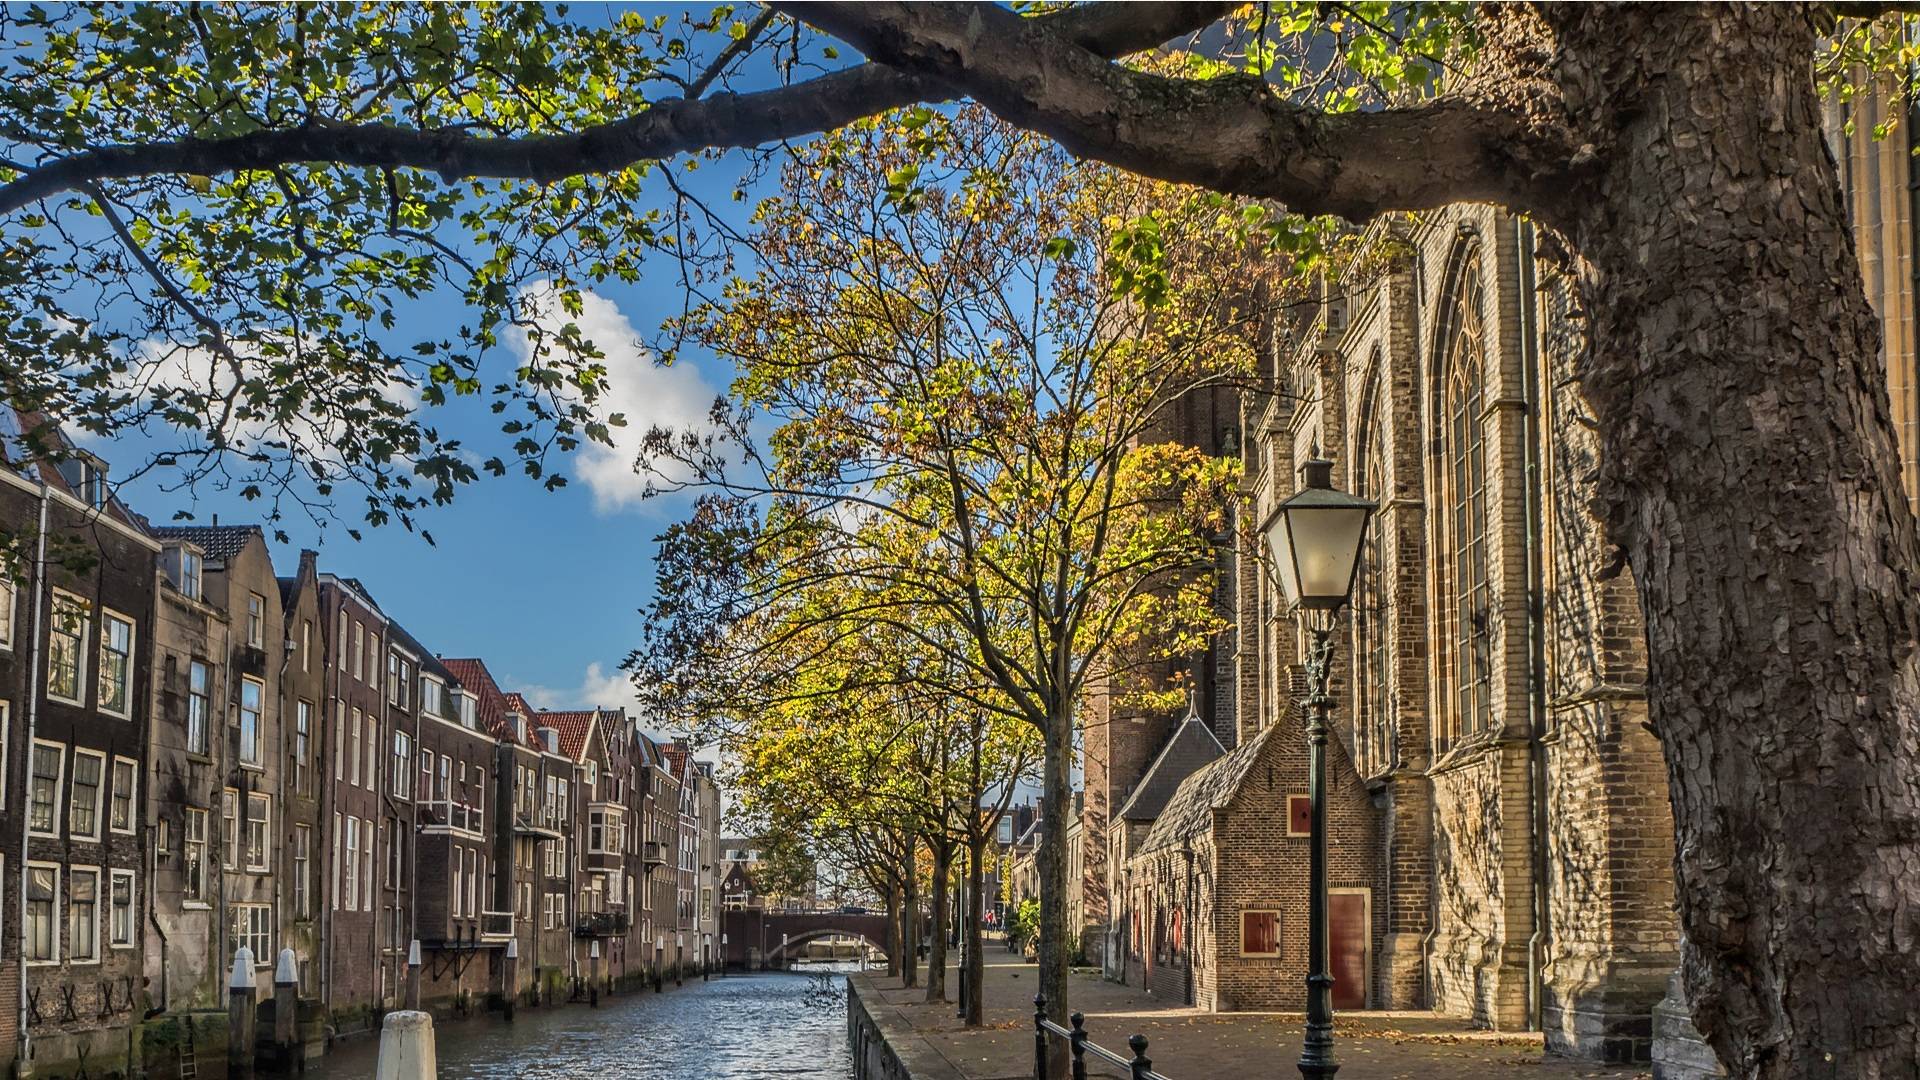 Dordrecht canal church houses_HDR